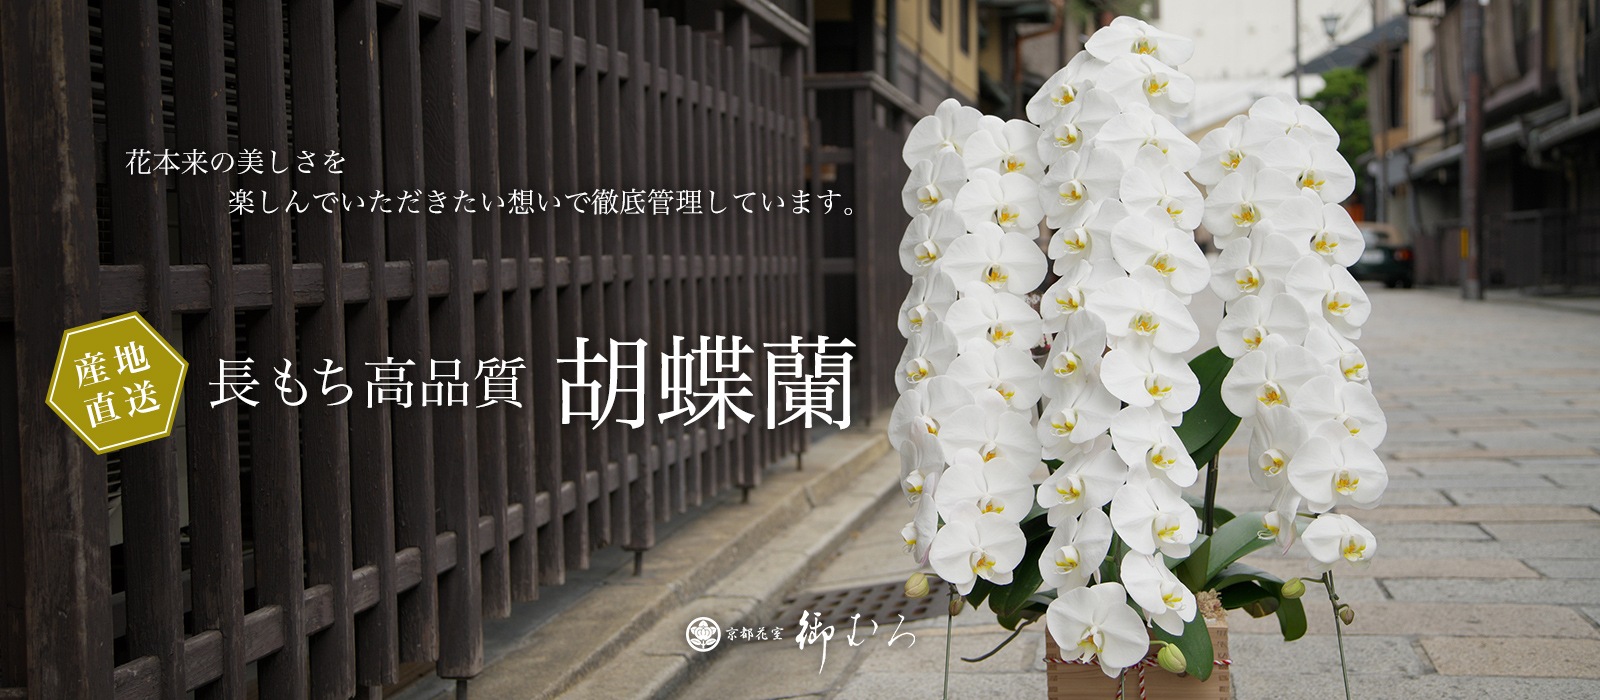 胡蝶蘭専門の京都花室おむろ 全国宅配 フラワーギフト通販対応